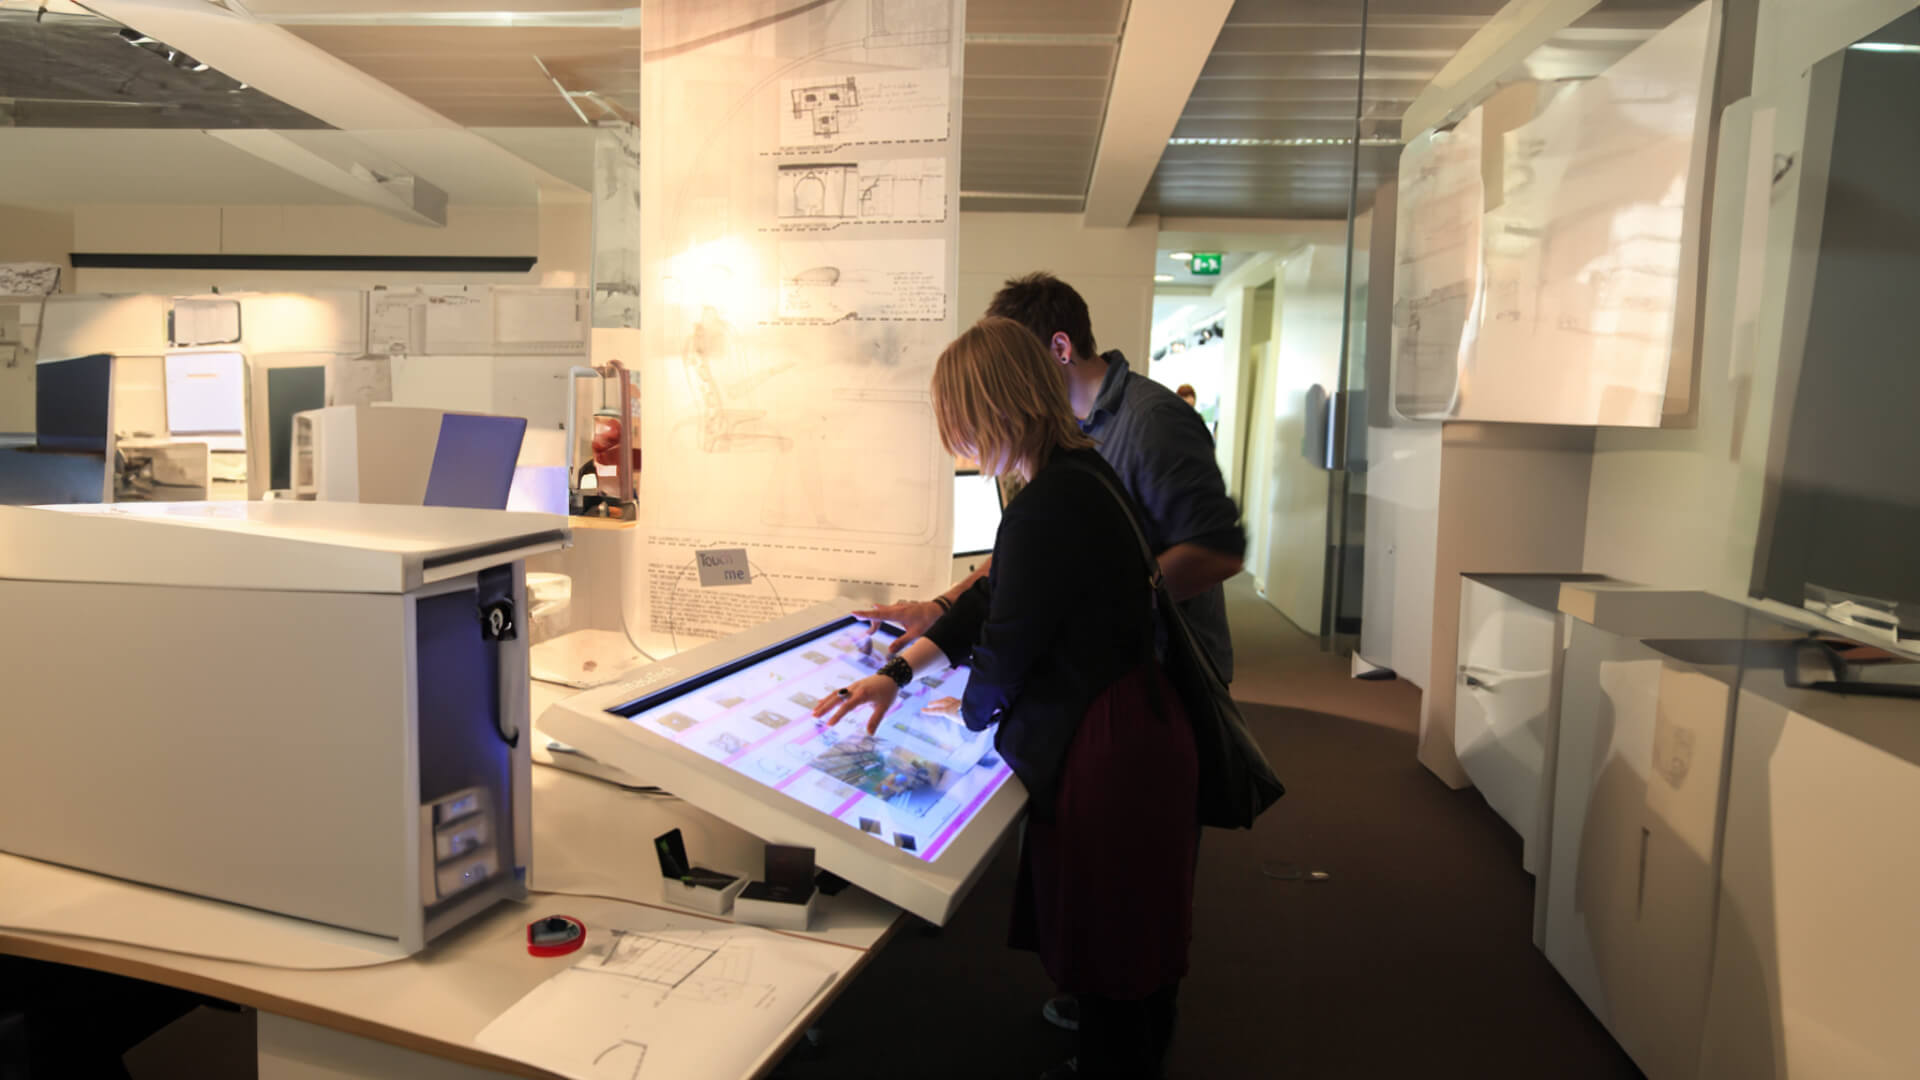 The Edinburgh College of Art installed interactive wayfinder kiosks.